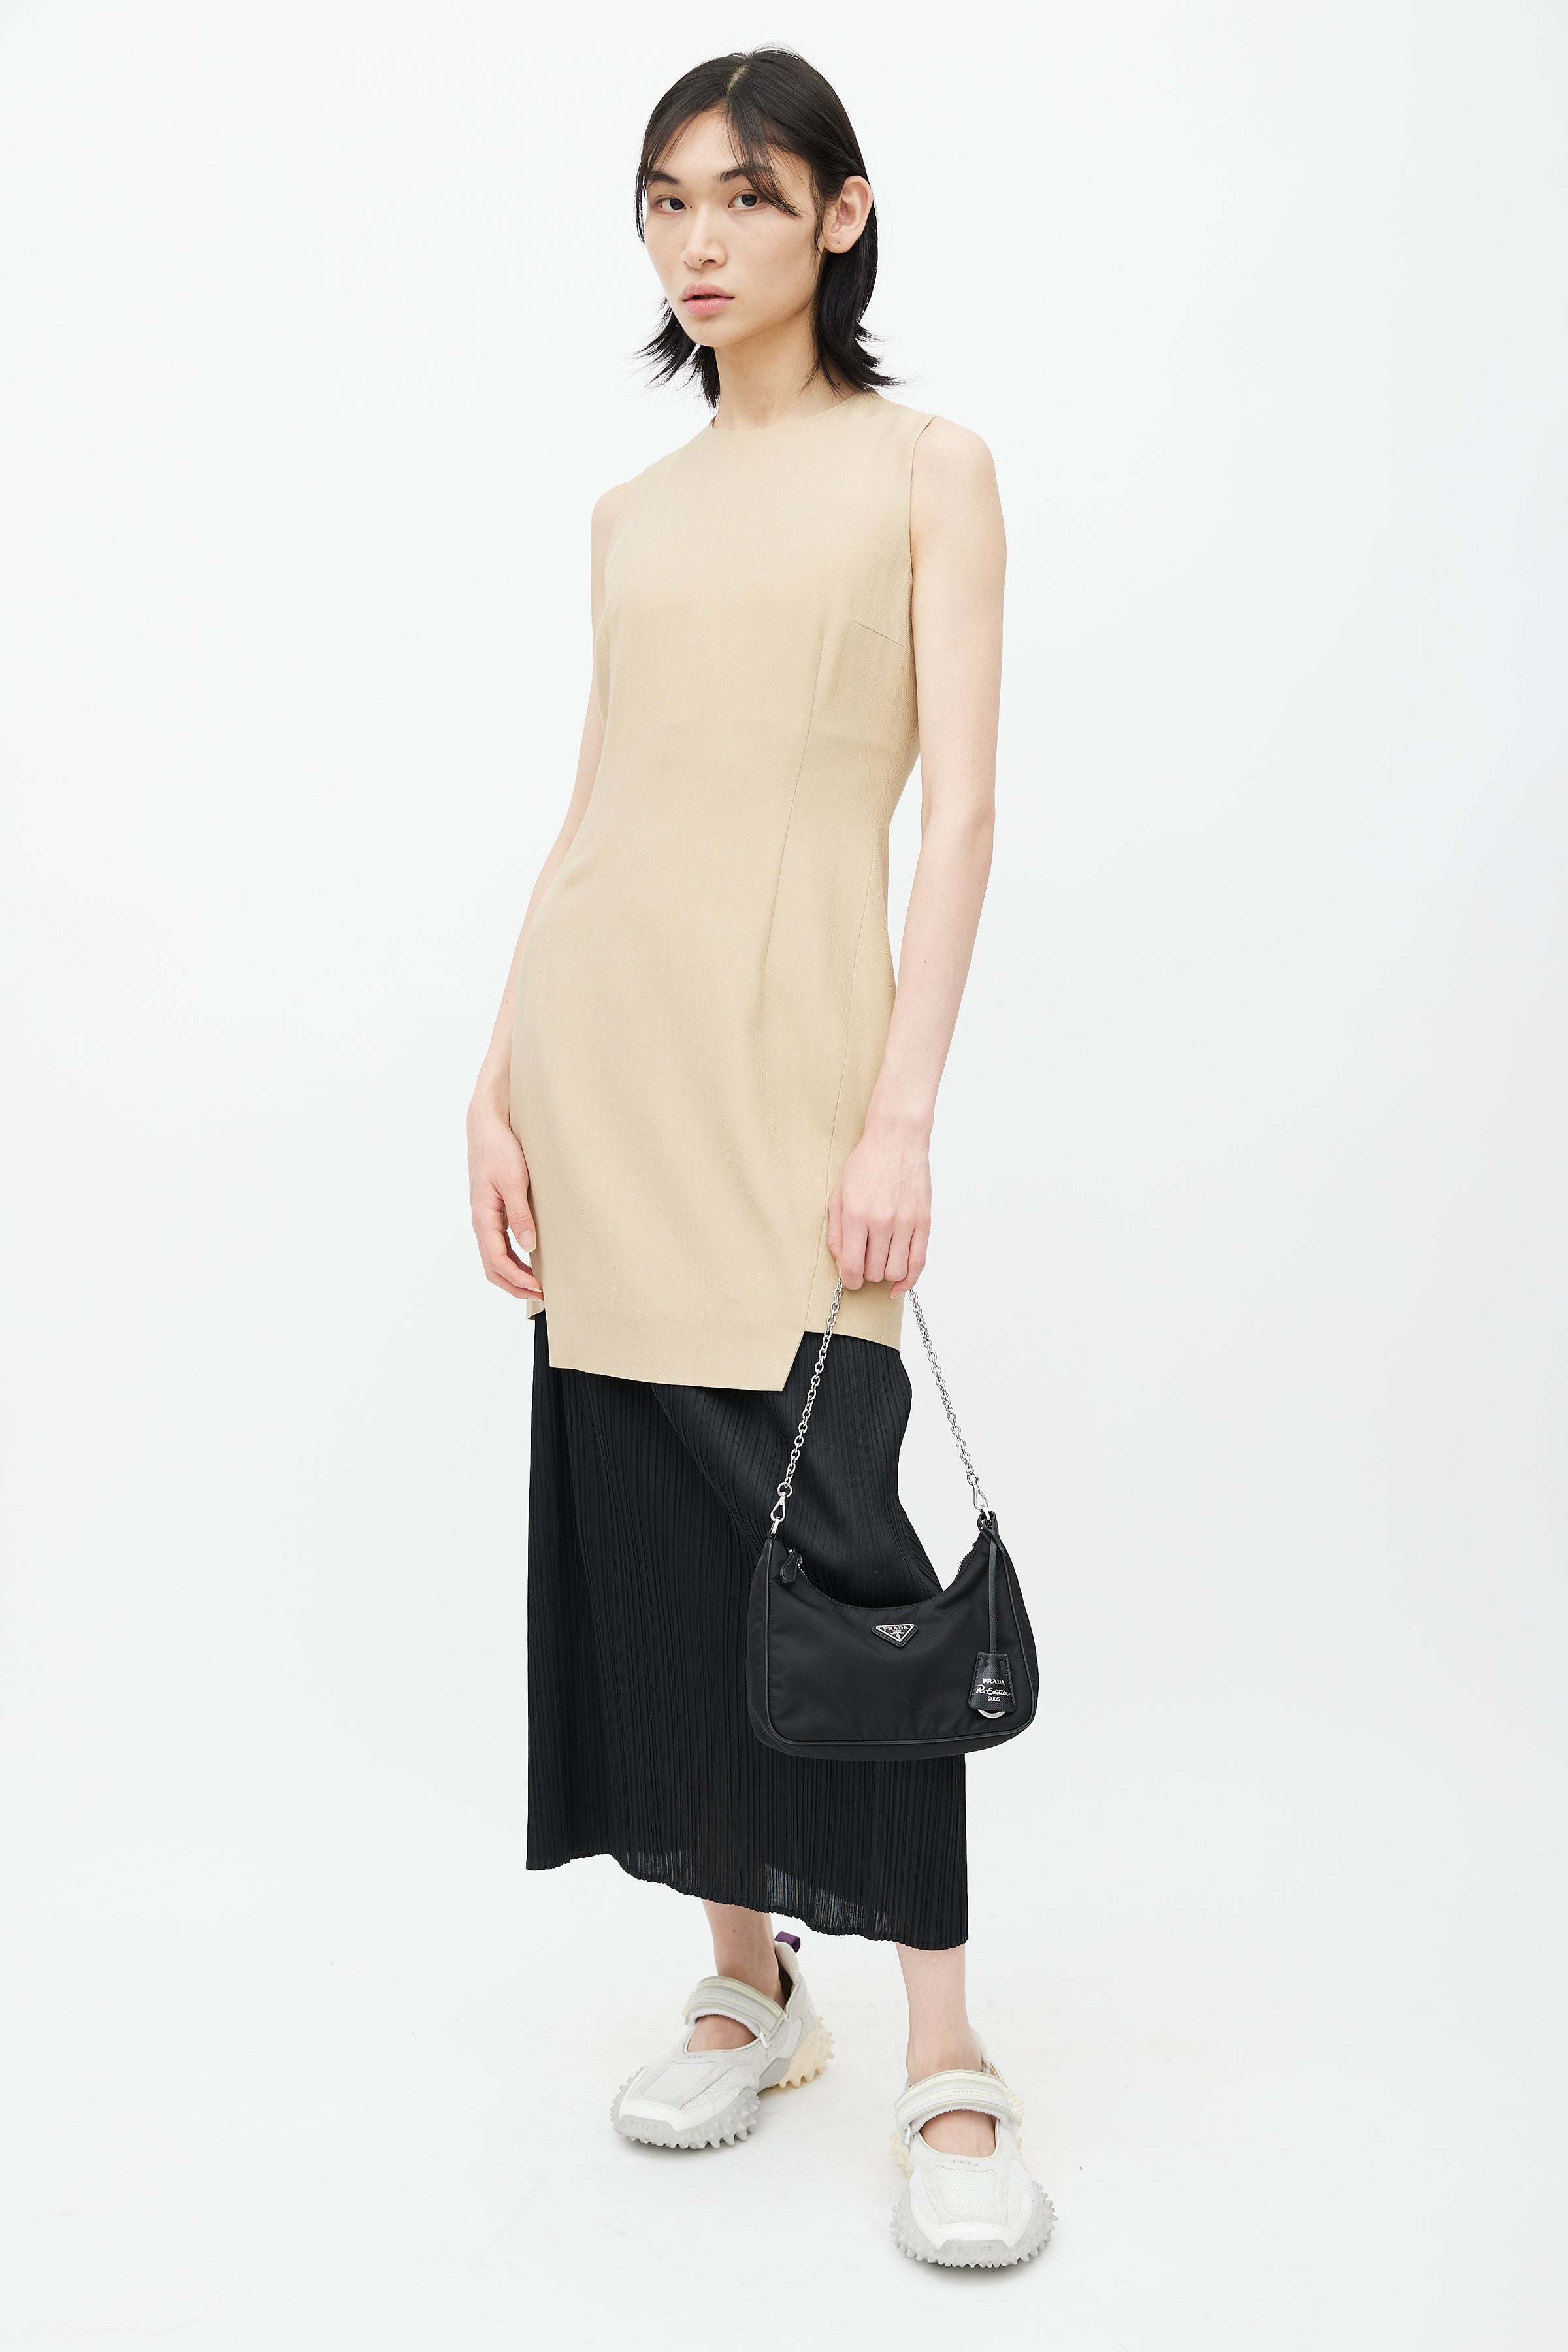 Prada Promenade Bag Saffiano Leather - Dress Raleigh Consignment